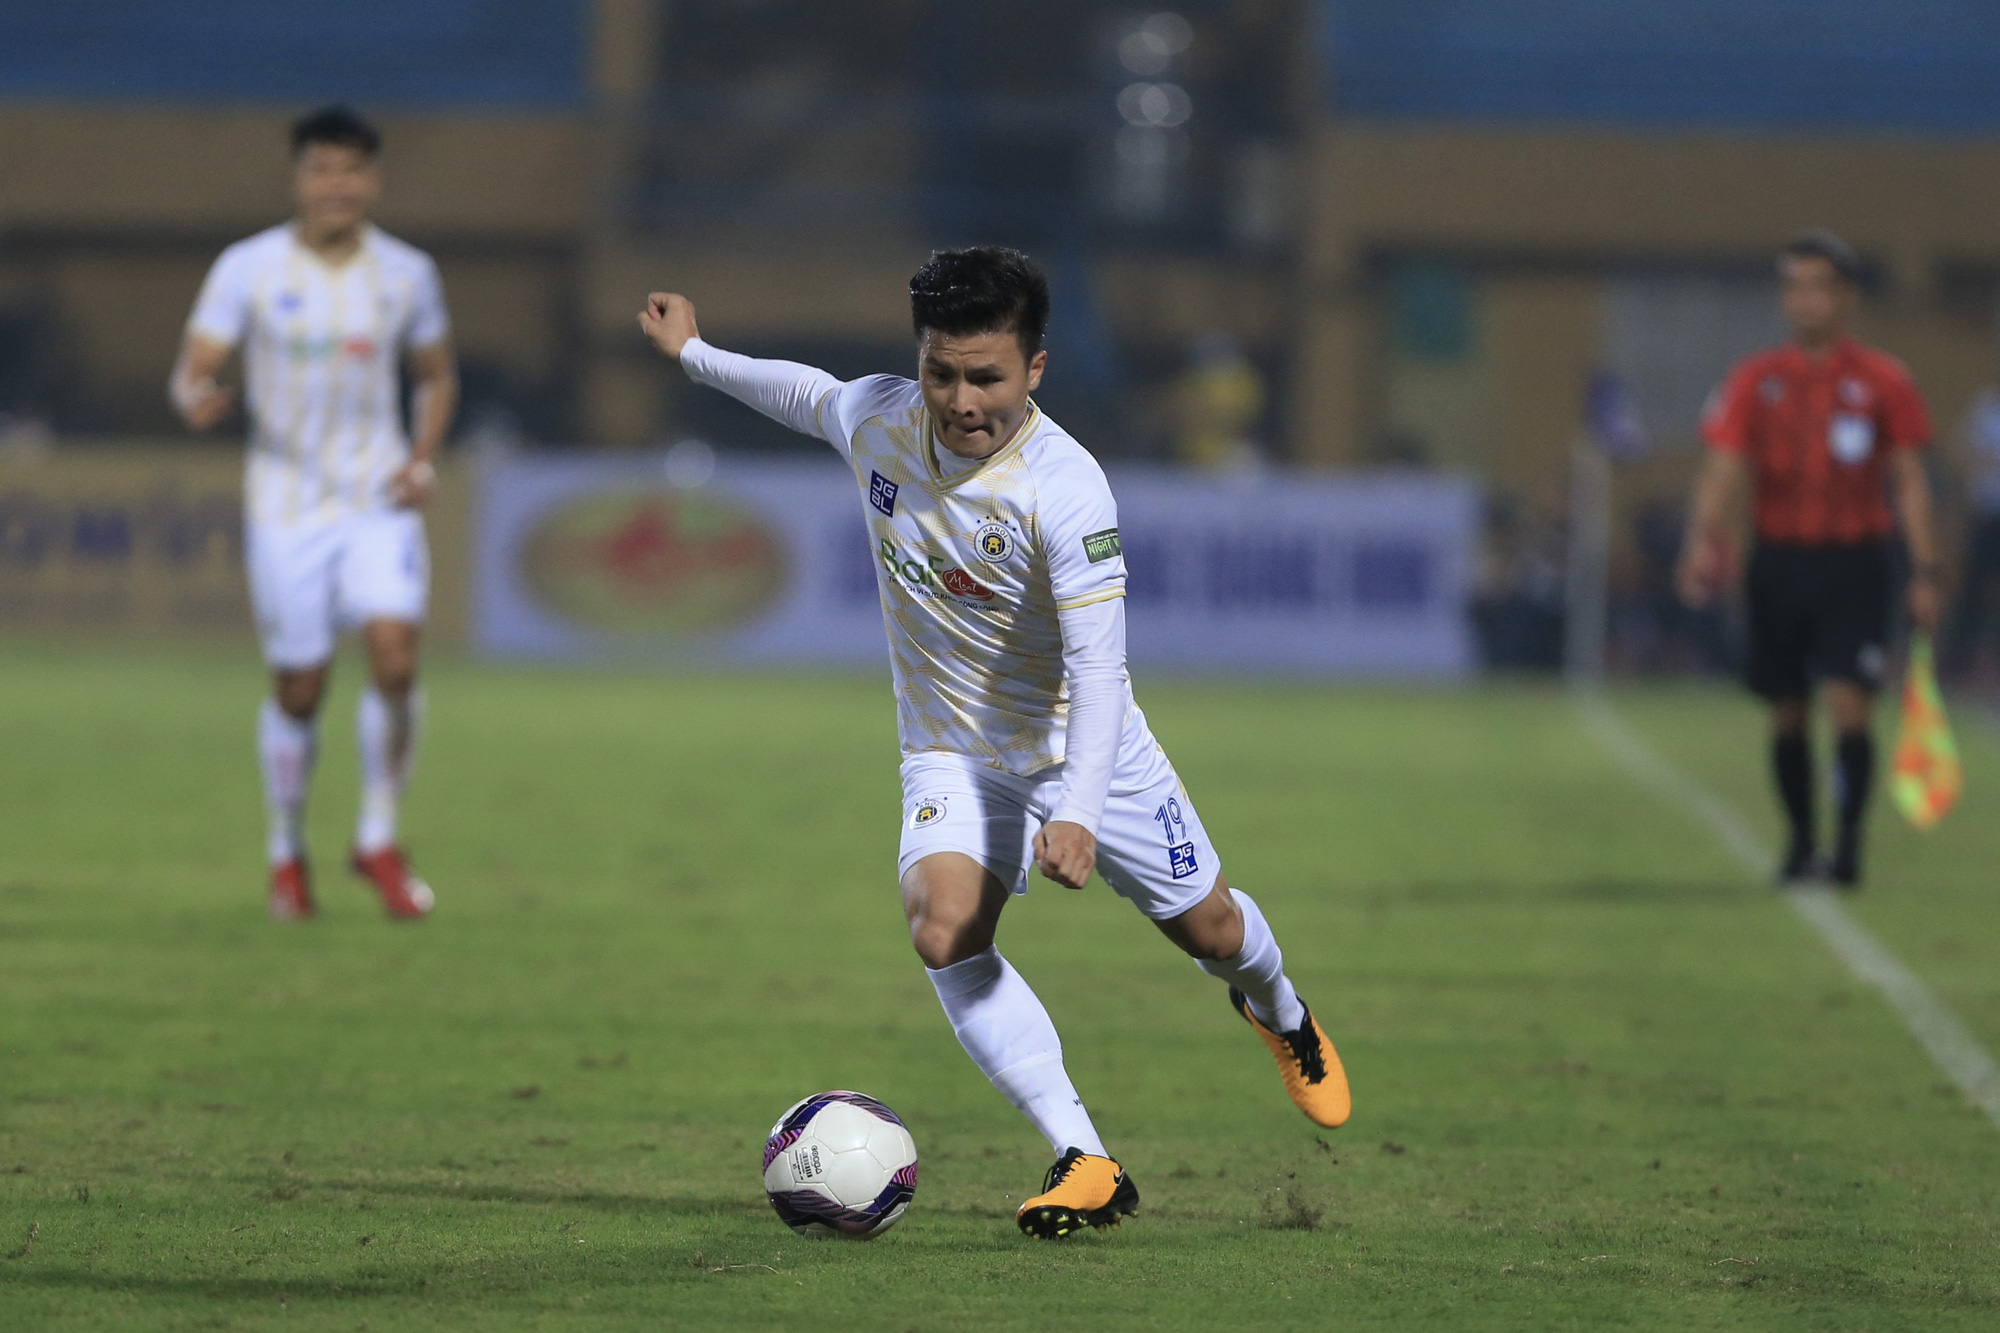 Derby Viettel – Hà Nội: Lời chia tay Quang Hải và bài kiểm tra HLV Chun Jae-ho - Ảnh 1.